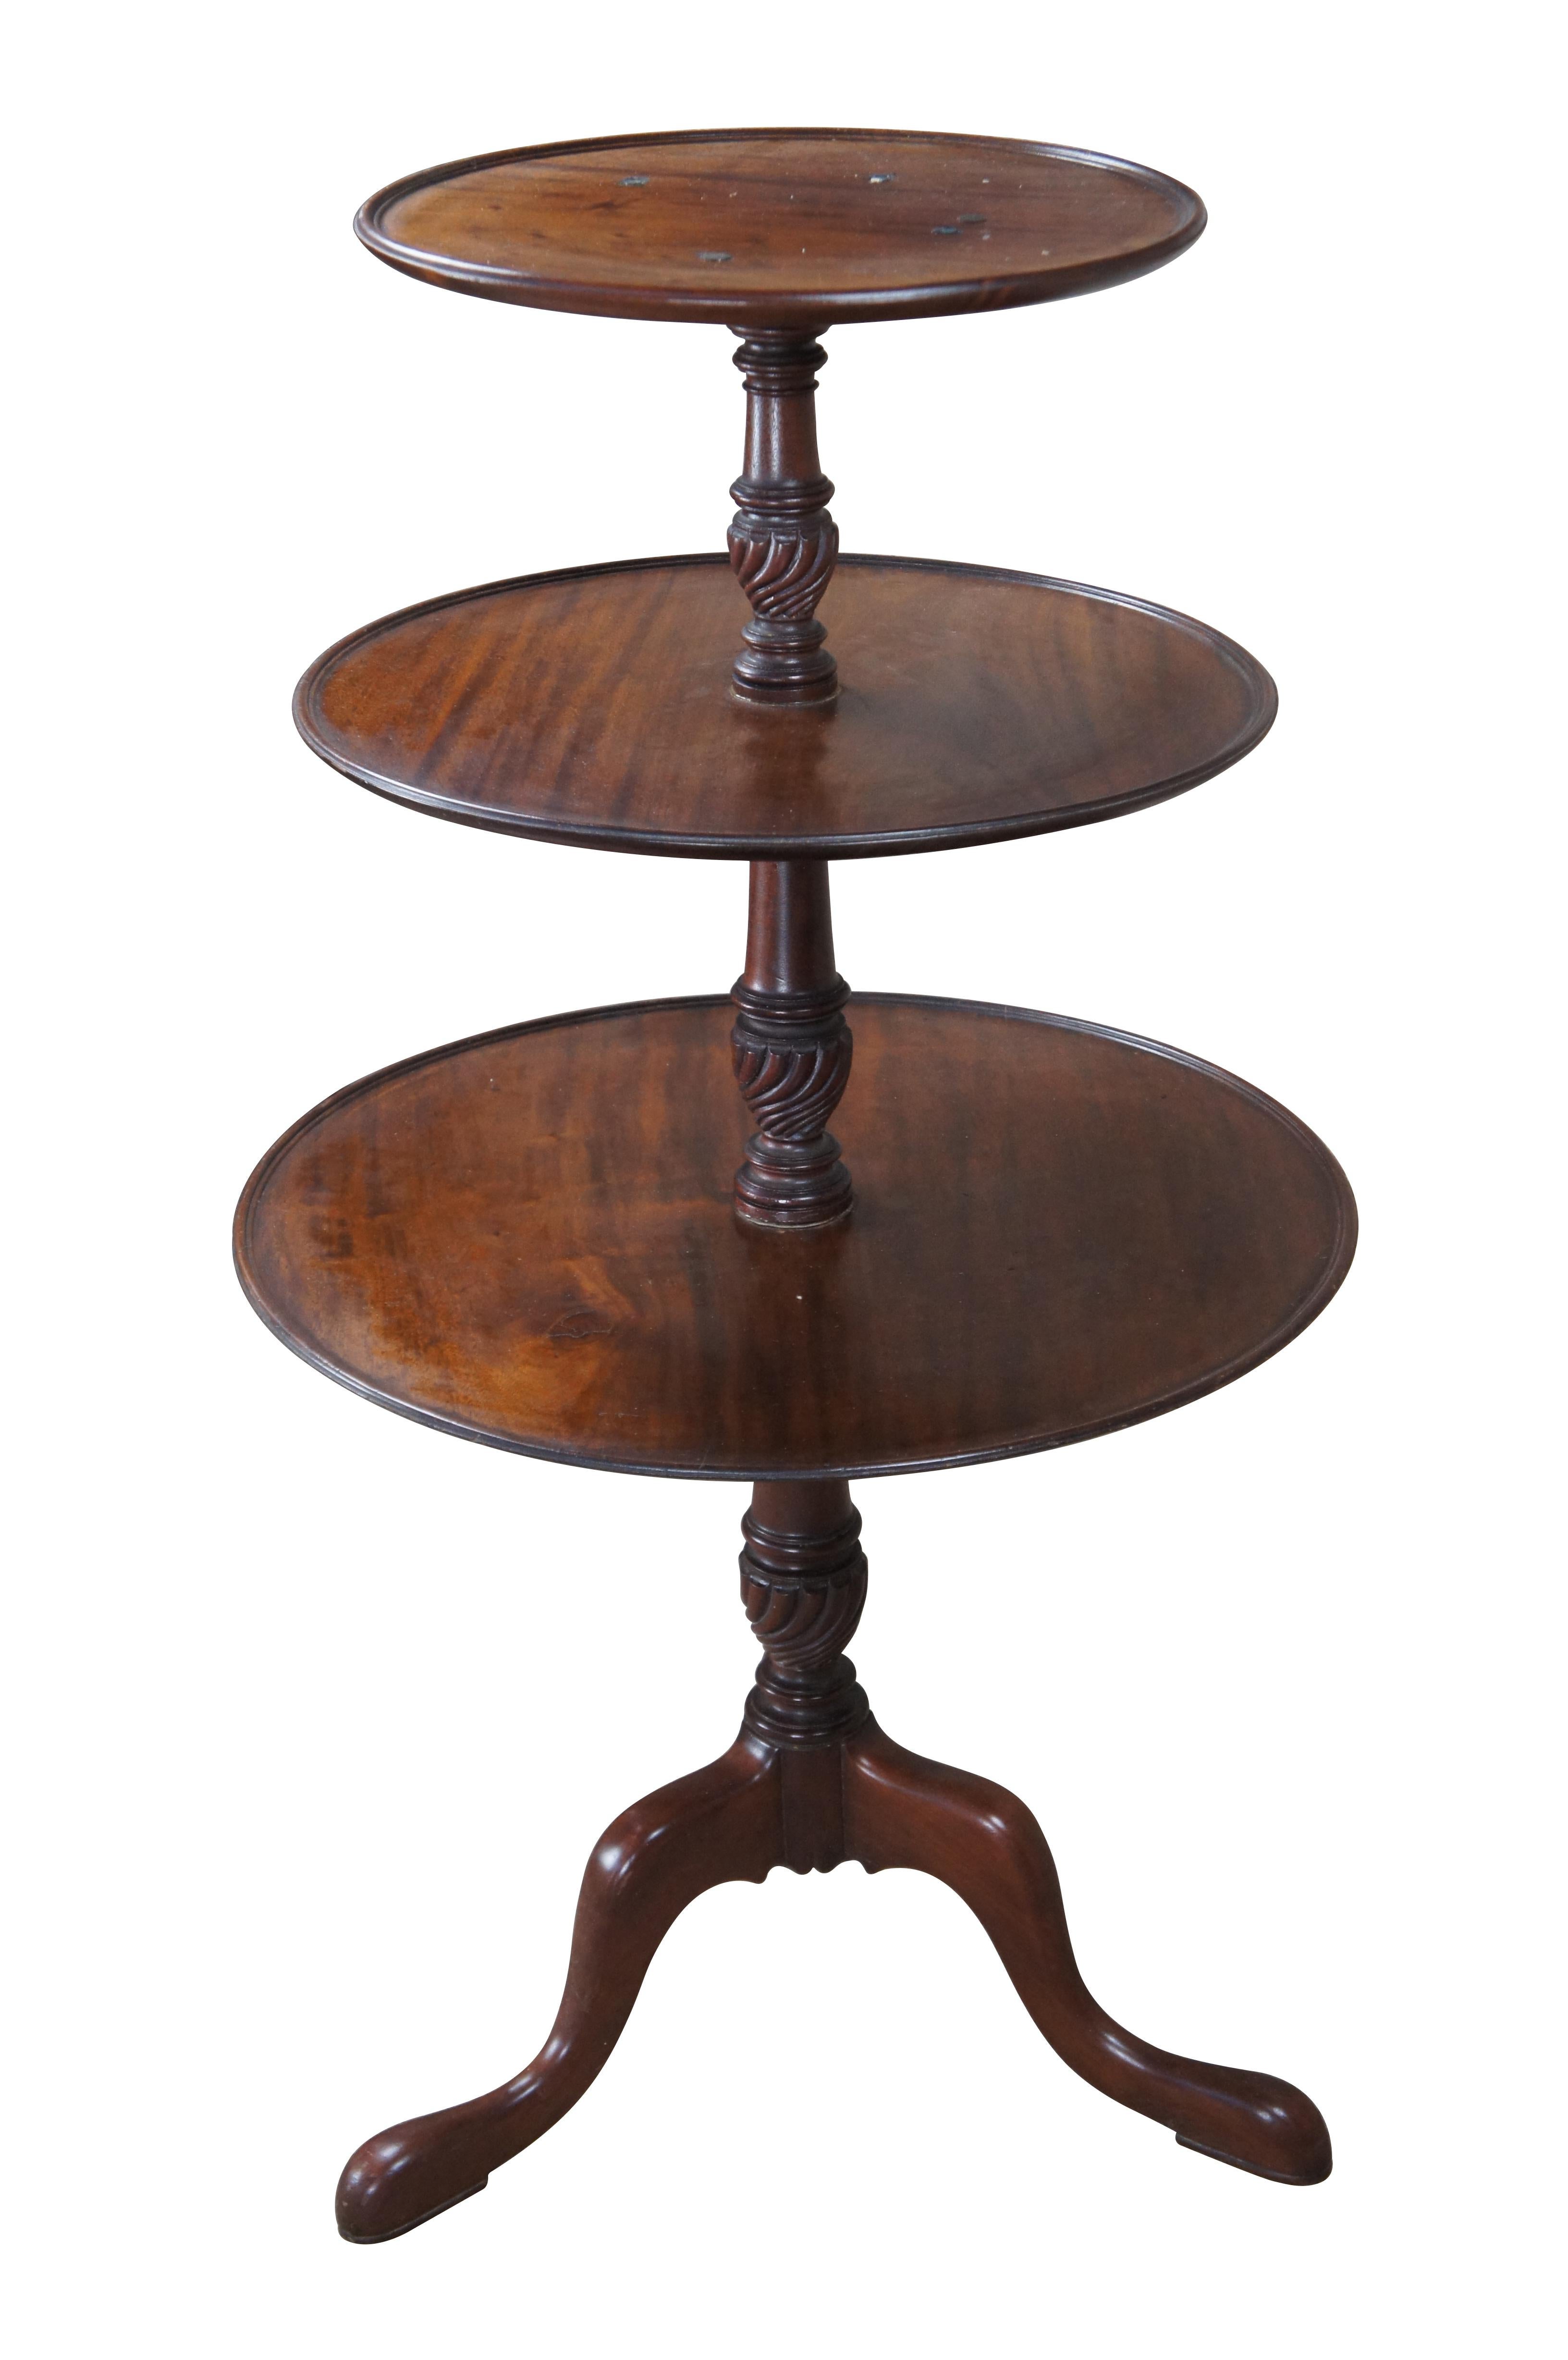 Englischer georgianischer Butler-Tisch im Vintage-Stil des 20. Jahrhunderts. Aus massivem Mahagoniholz gefertigt, mit 3 Etagen, die durch gedrechselte und geschnitzte Stützen verbunden sind. Der Tisch wird von drei nach unten gebogenen Beinen